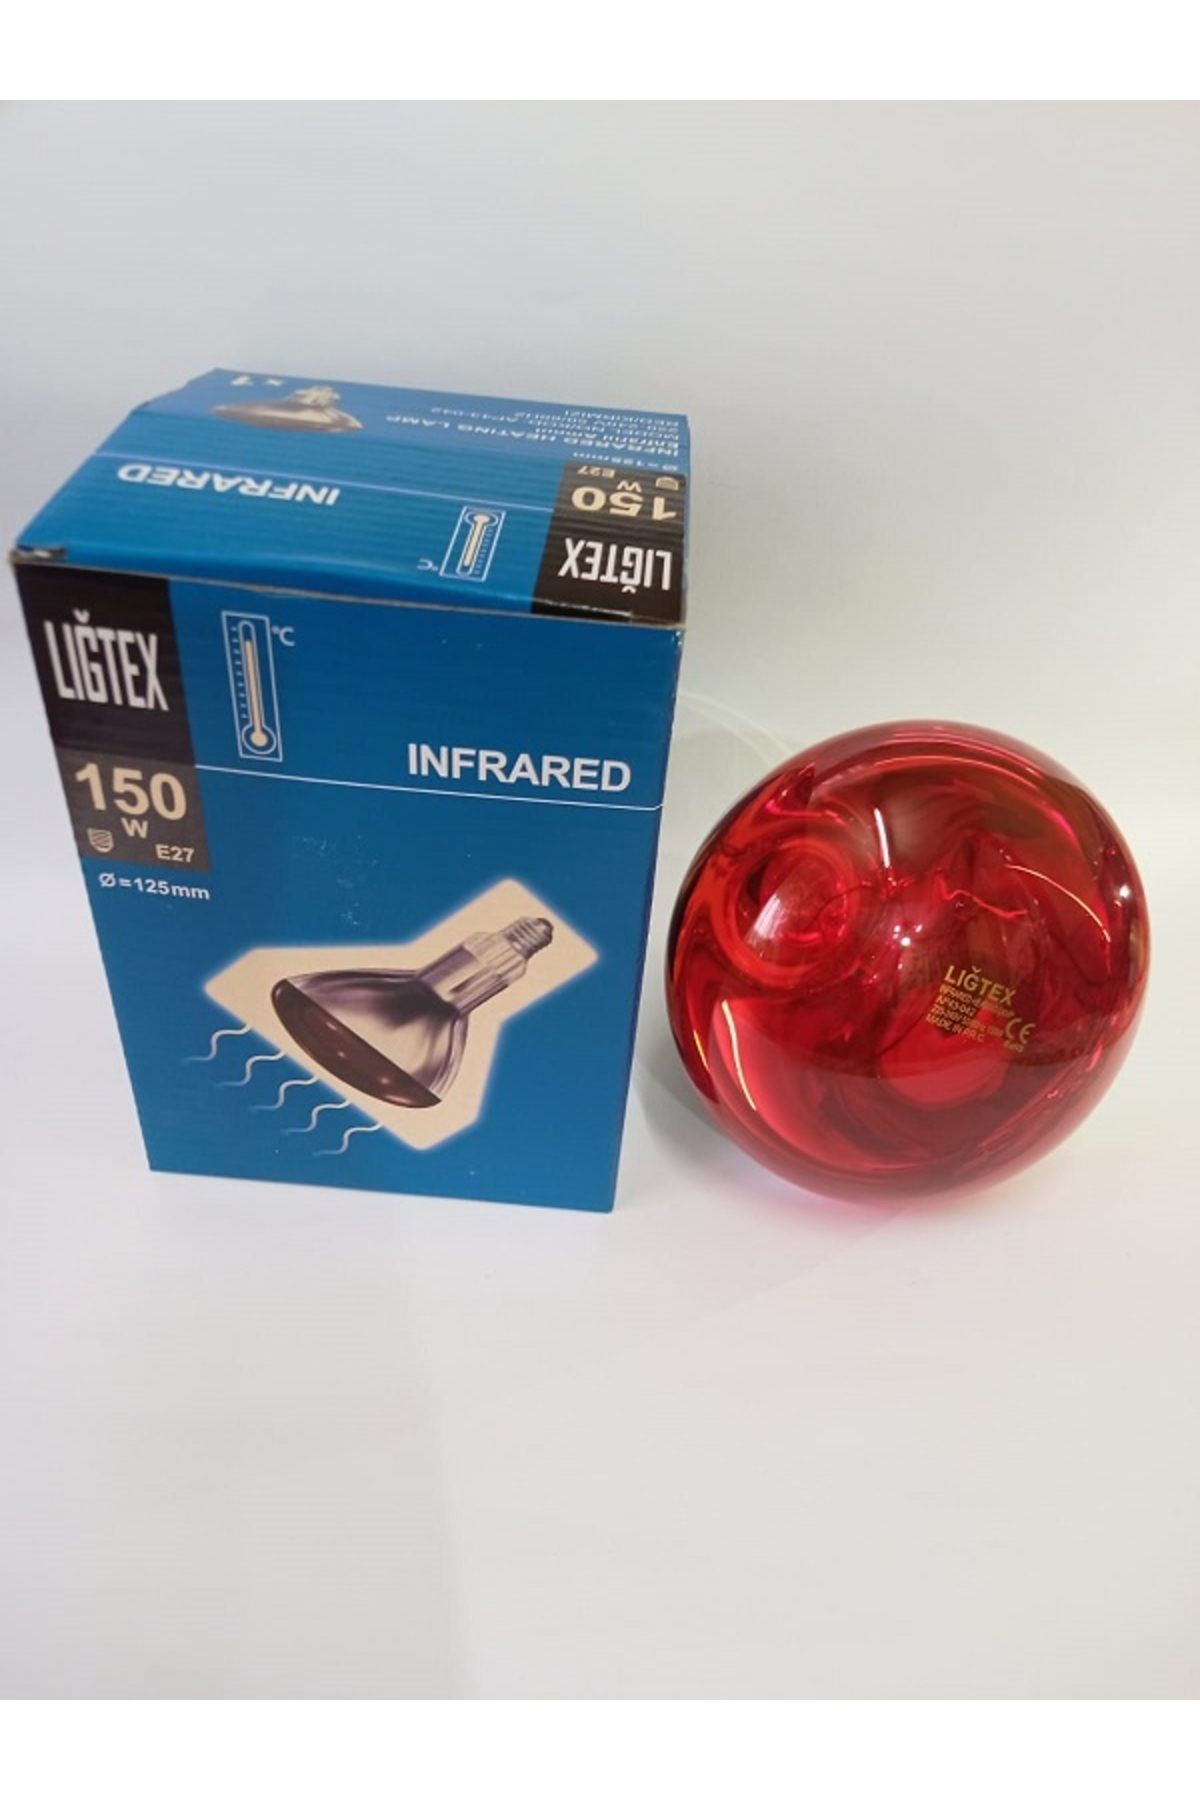 Ligtex İnfrared Isıtıcı Lamba 150 Watt Kümes Isıtıcı Ampül